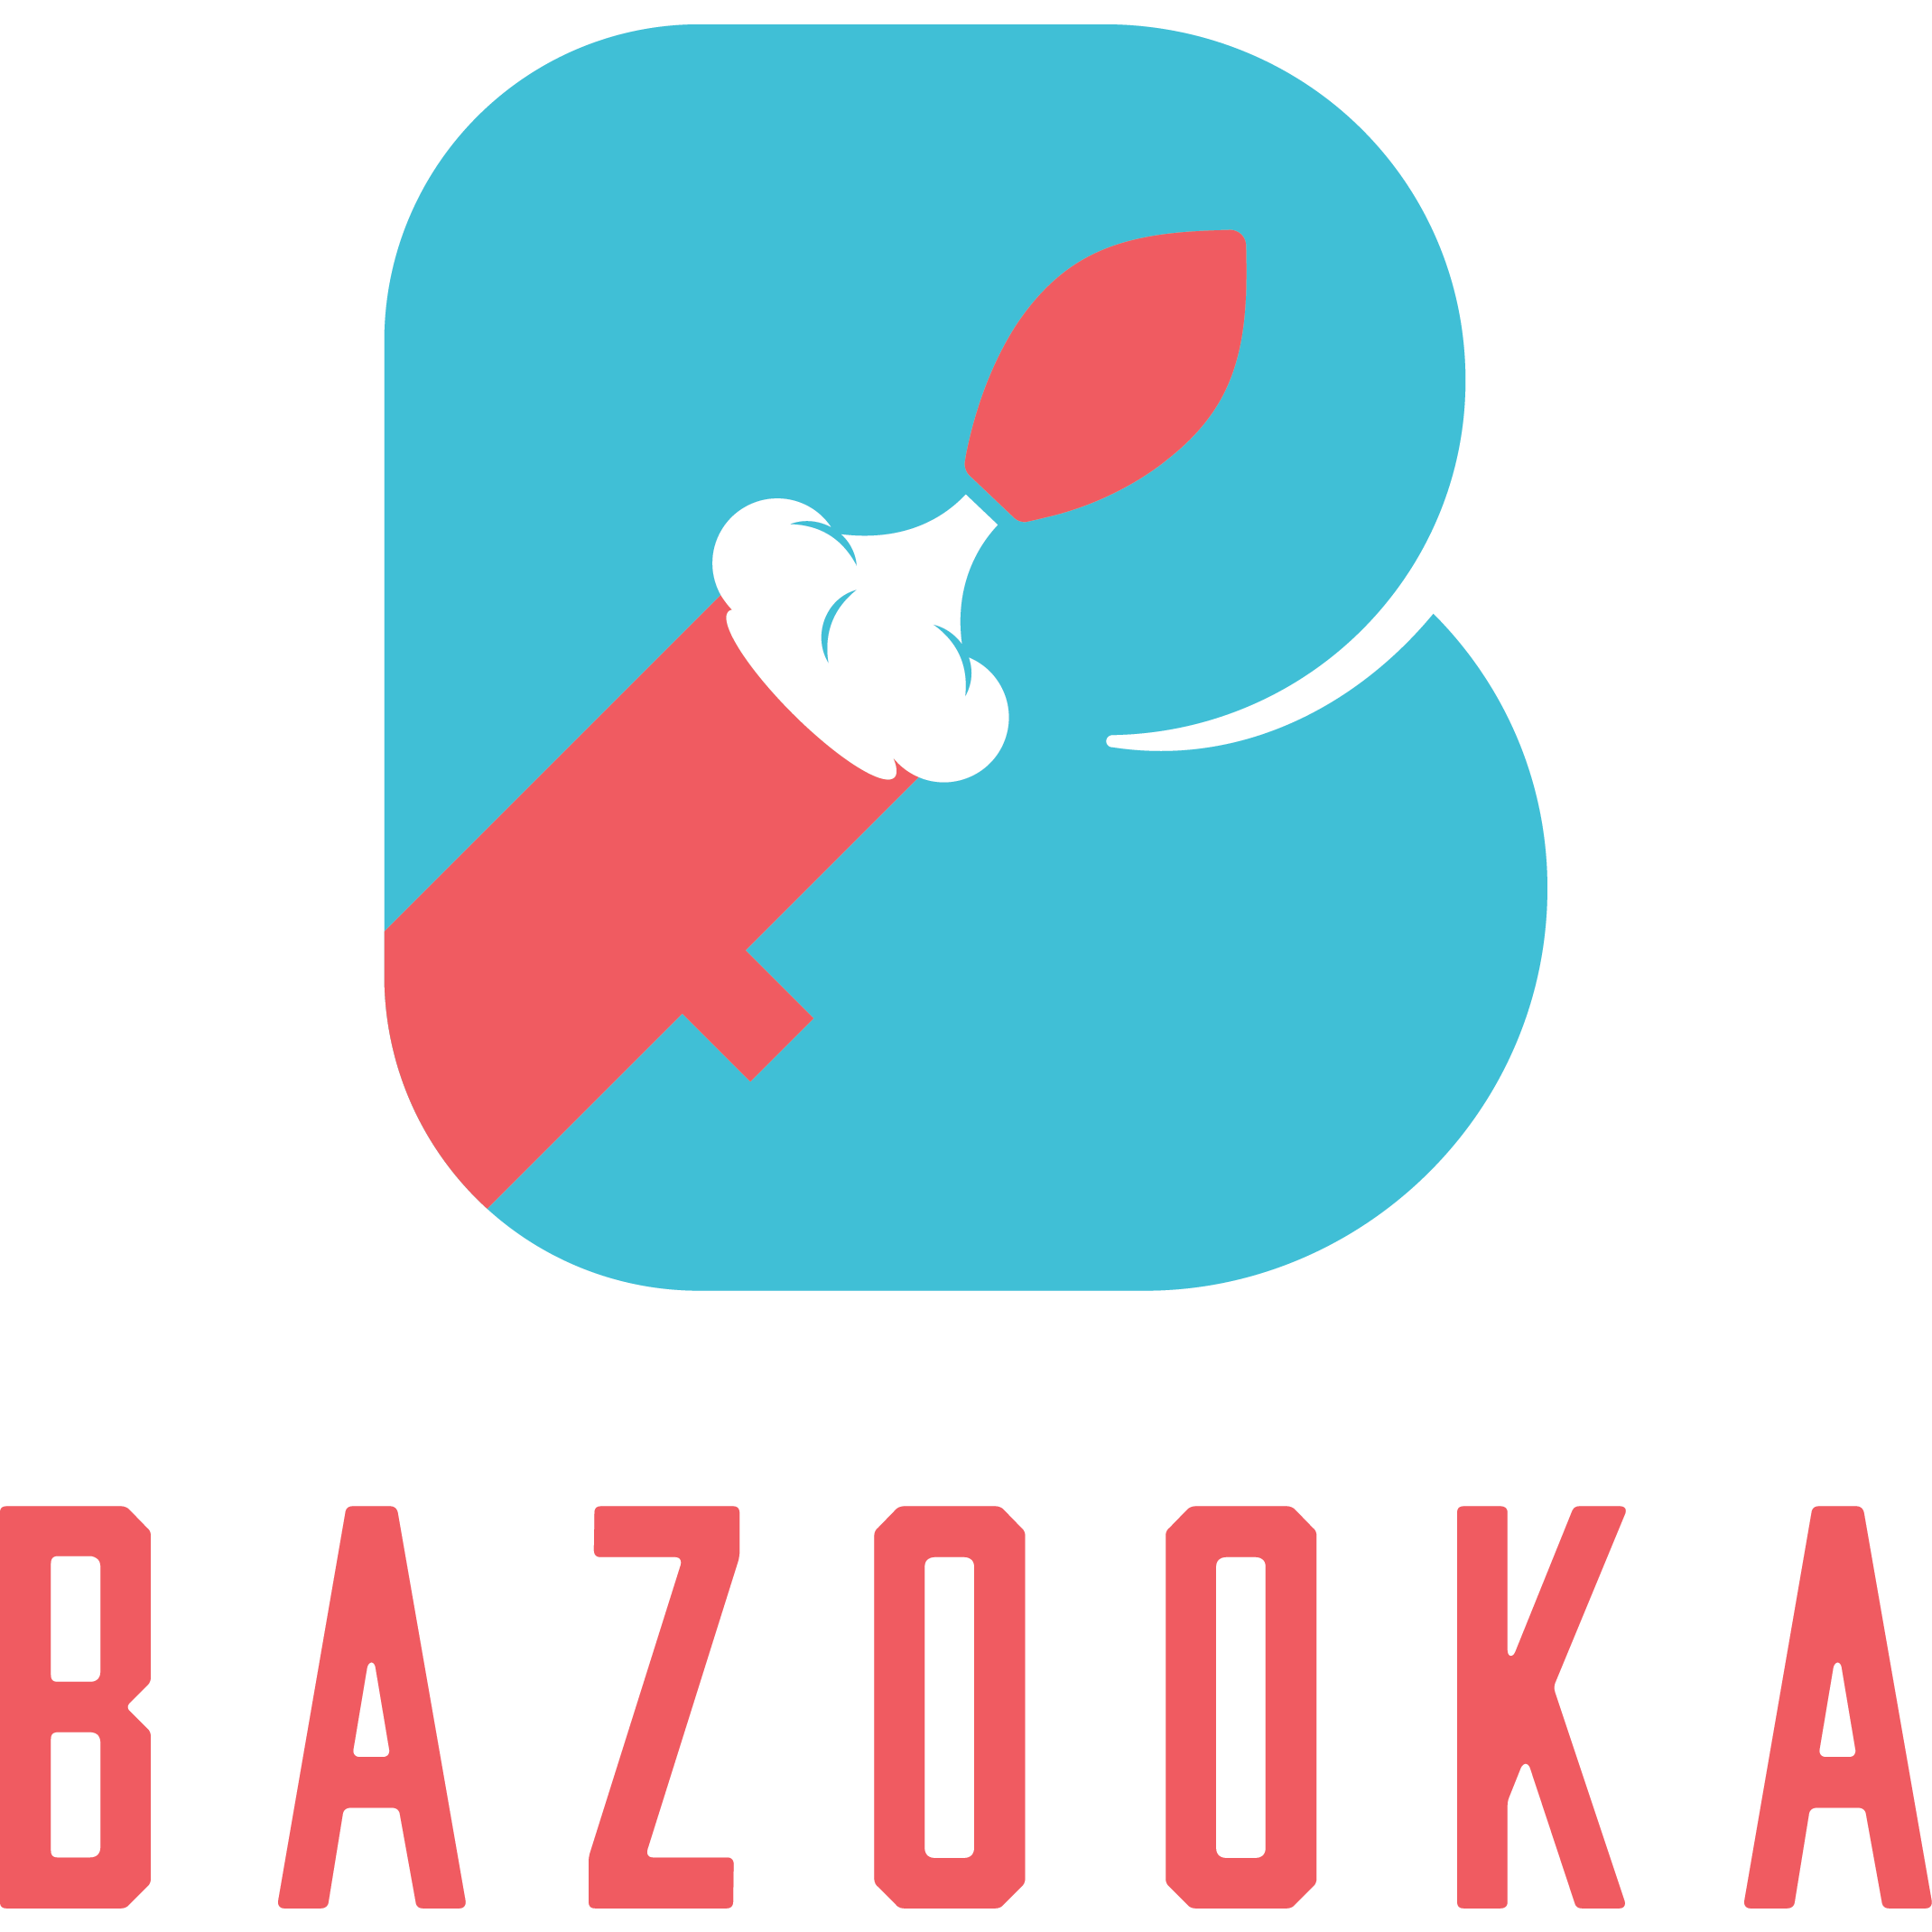 BAZOOKA